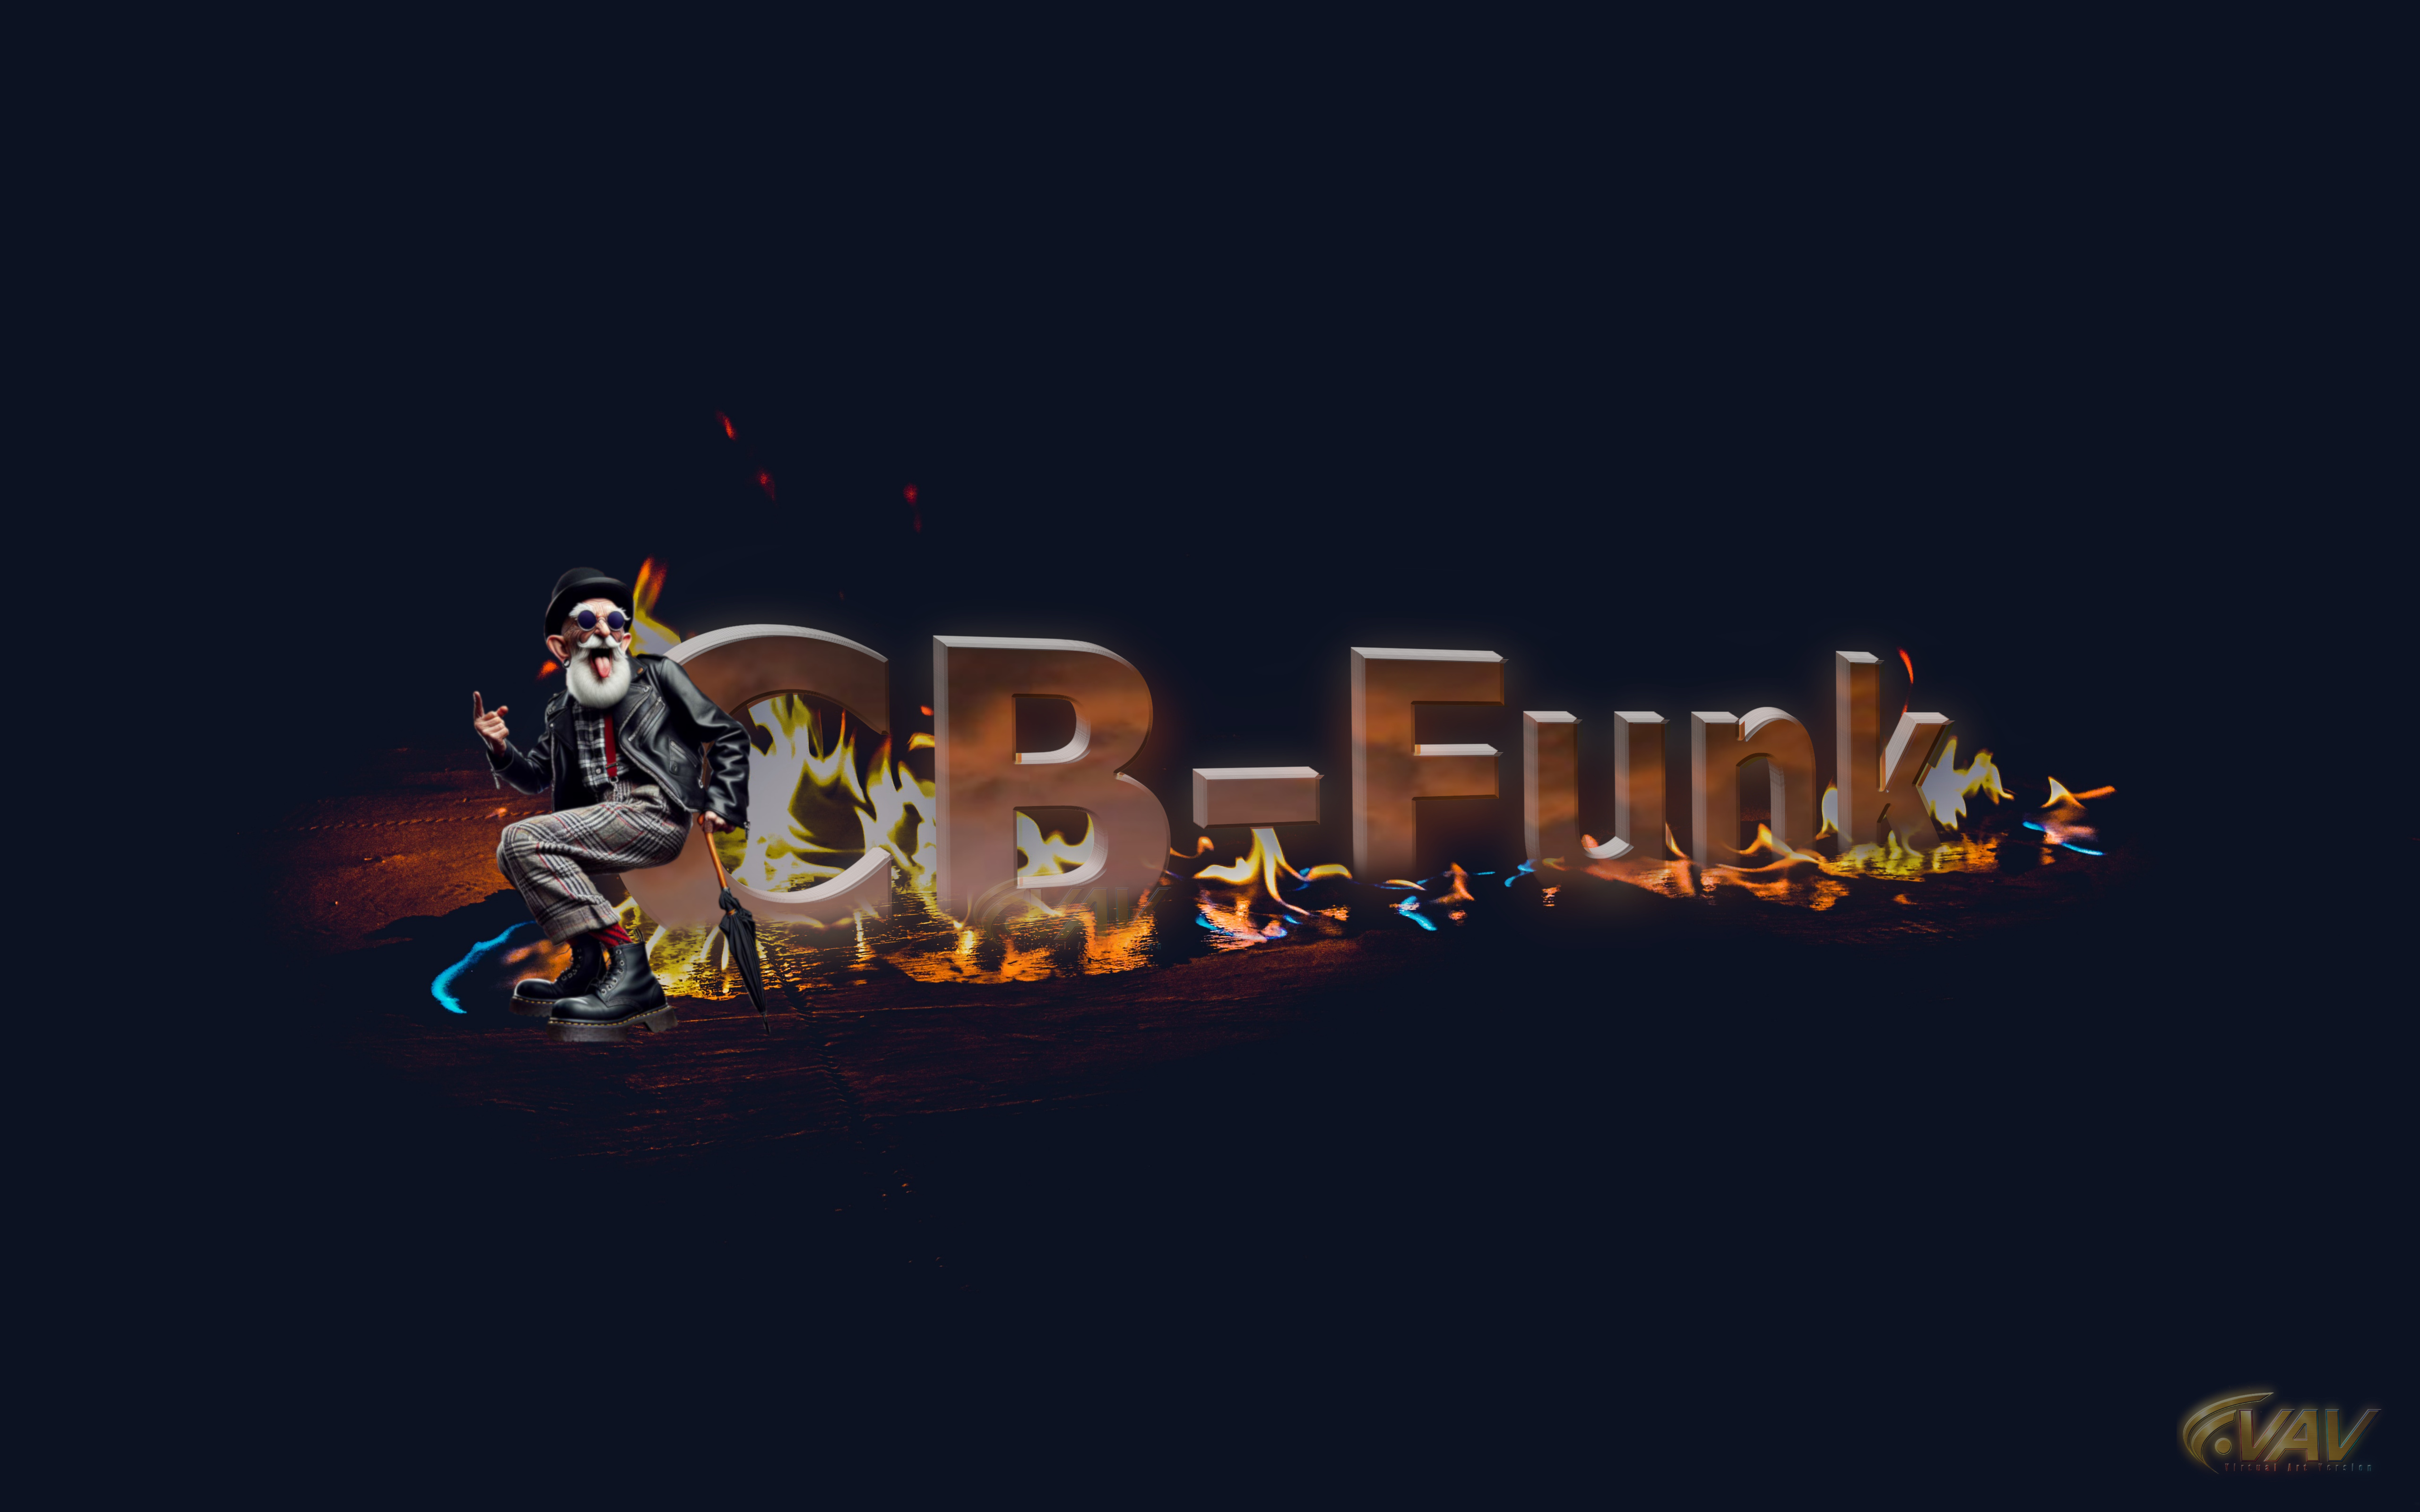 CB-Funk-wallpaper-5120x3200.jpg